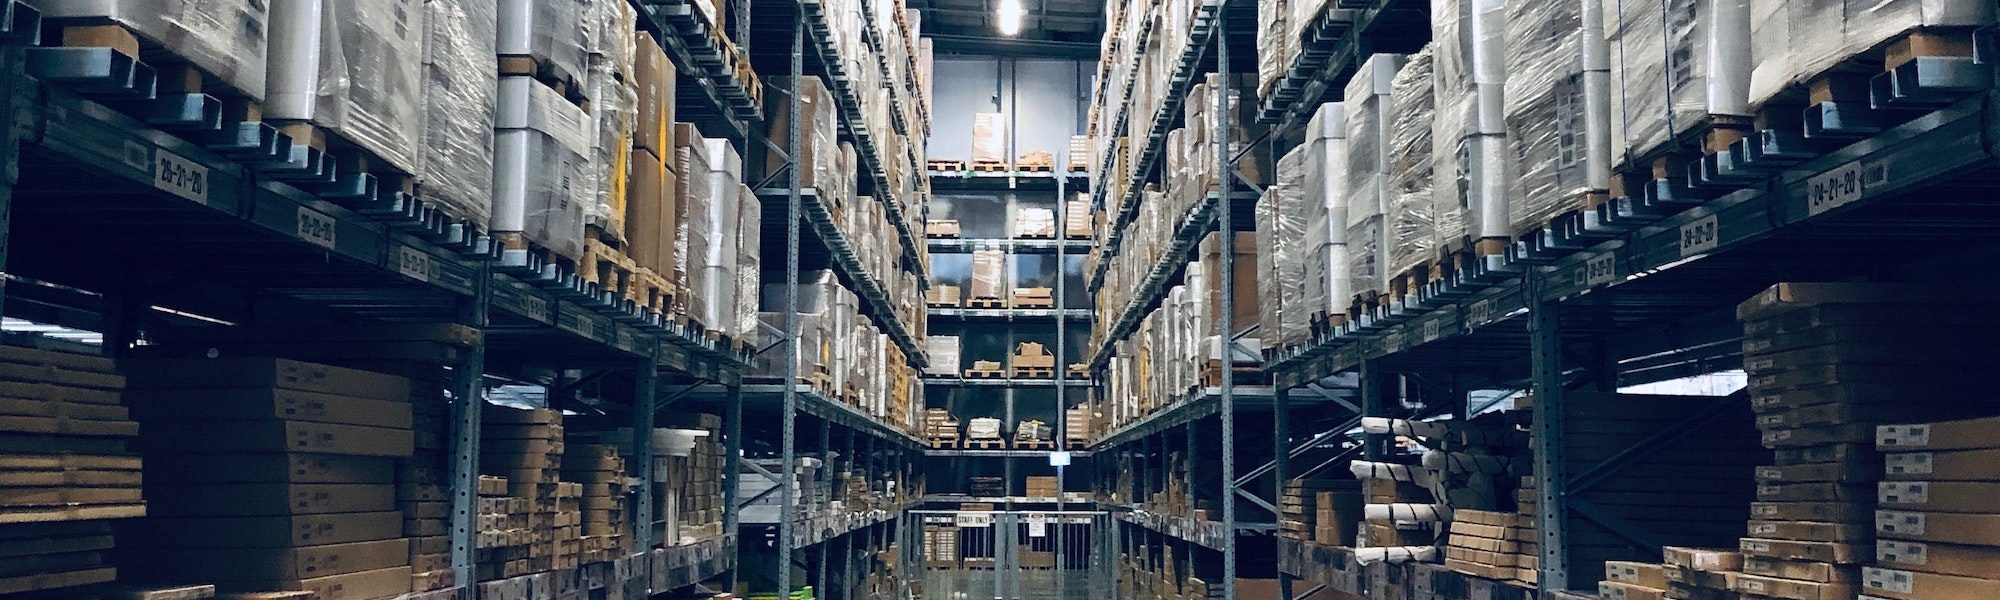 warehouse-slider